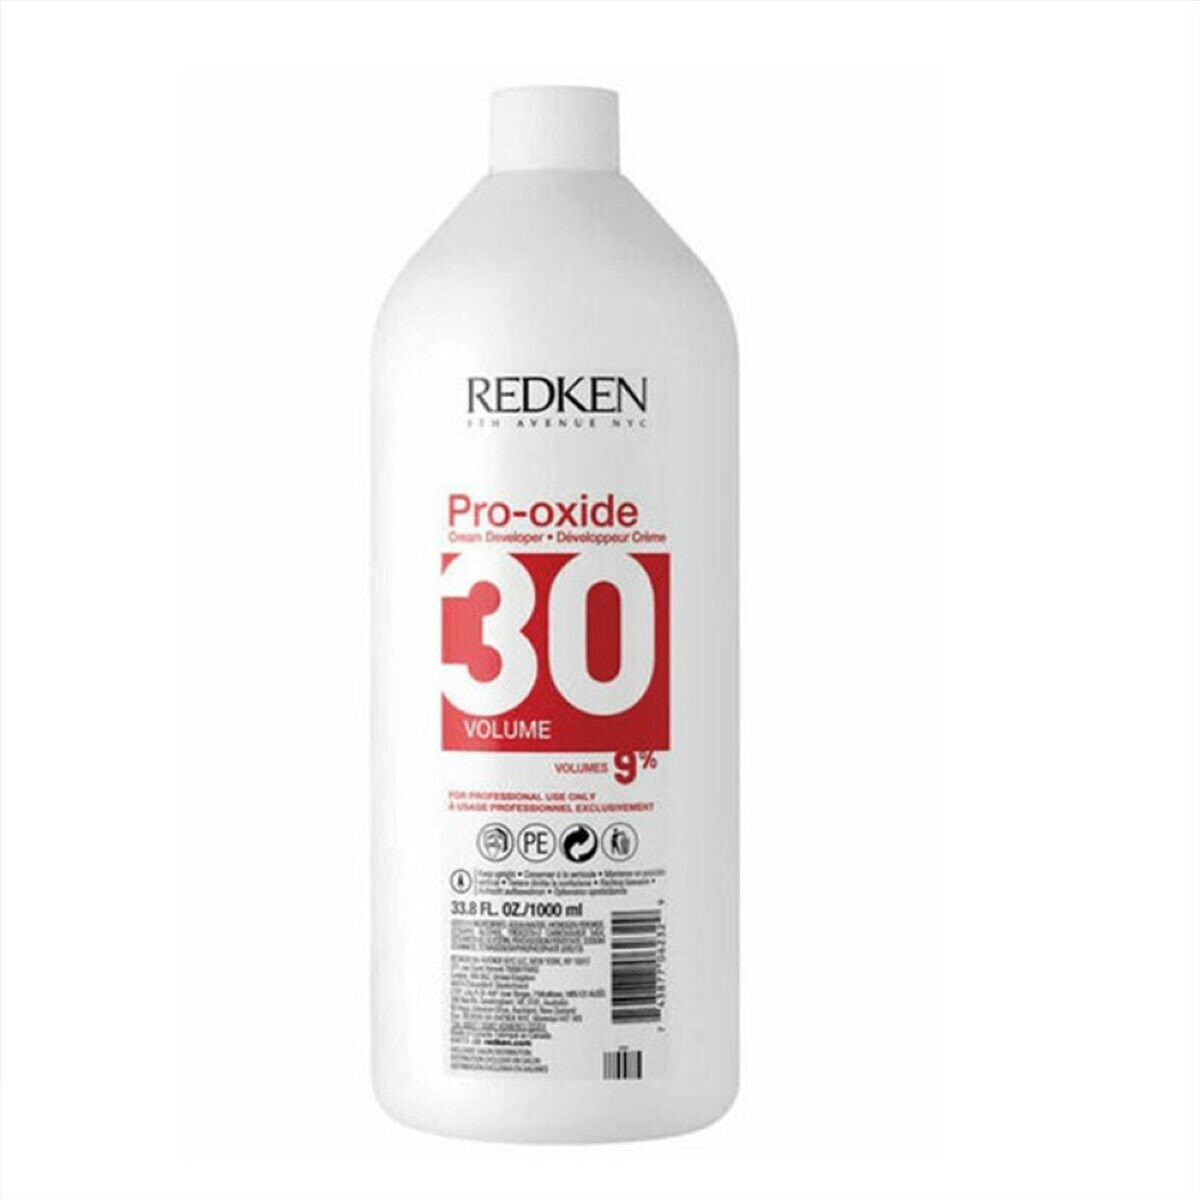 Redken Pro-Oxide  Developer 30 Vol 9 %  Окислитель для краски для волос 9 % 1000 мл